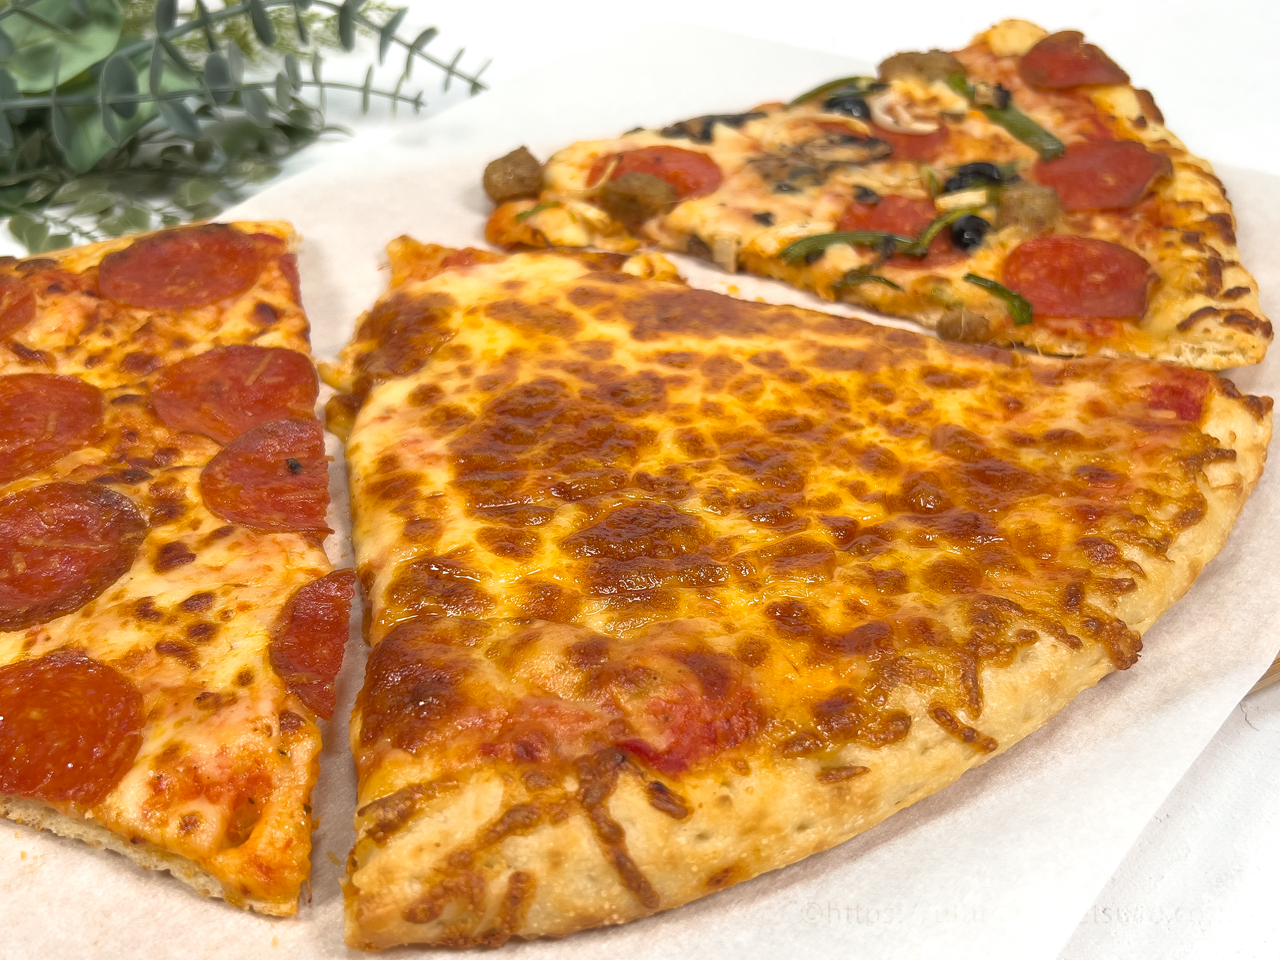 コストコのフードコートでピザが食べられる 購入時の注意点も解説